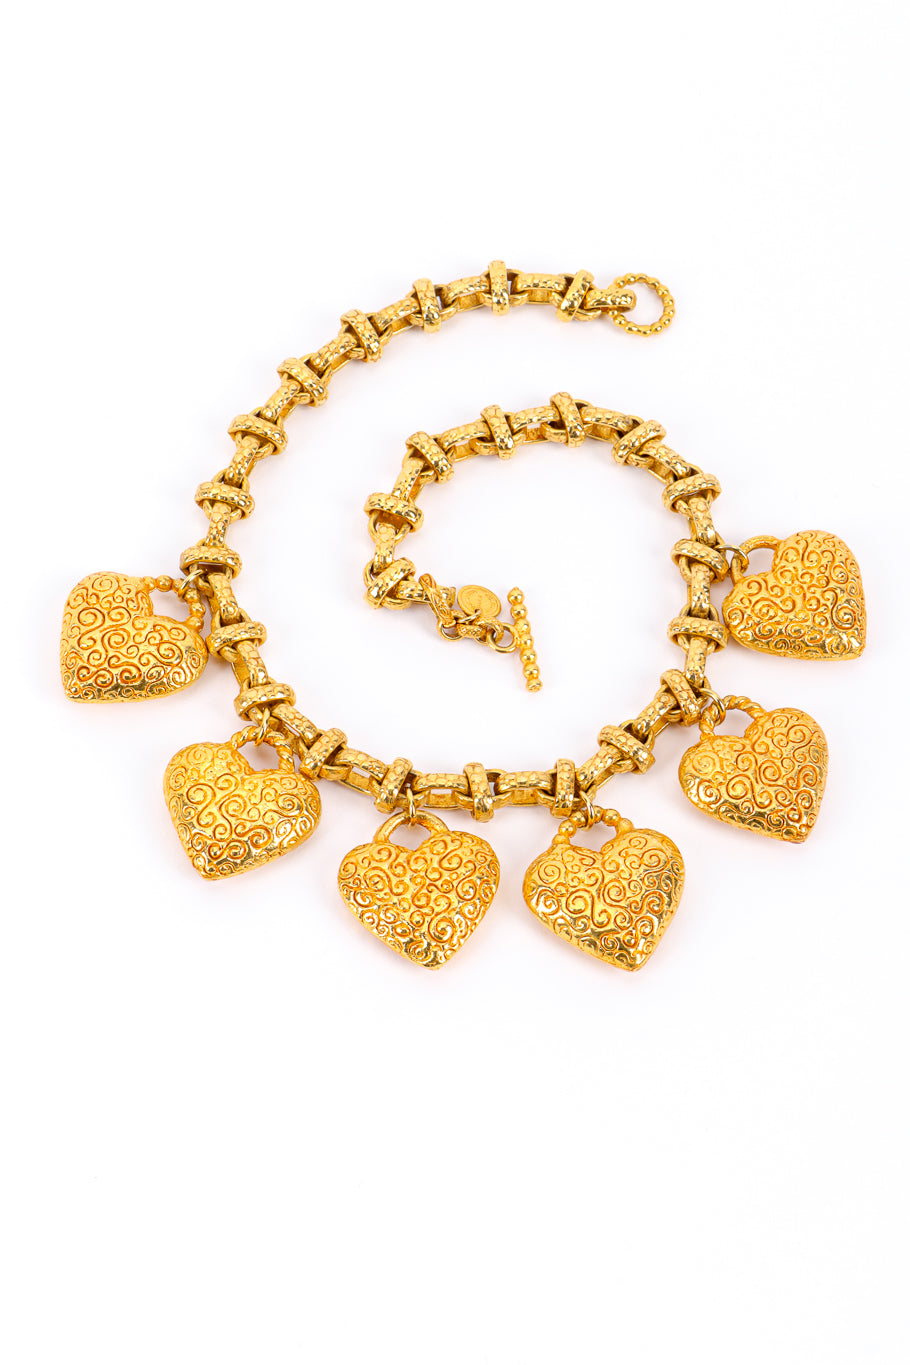 Heart Charm Dangle Necklace by Dominique Aurientis unclasped @recessla